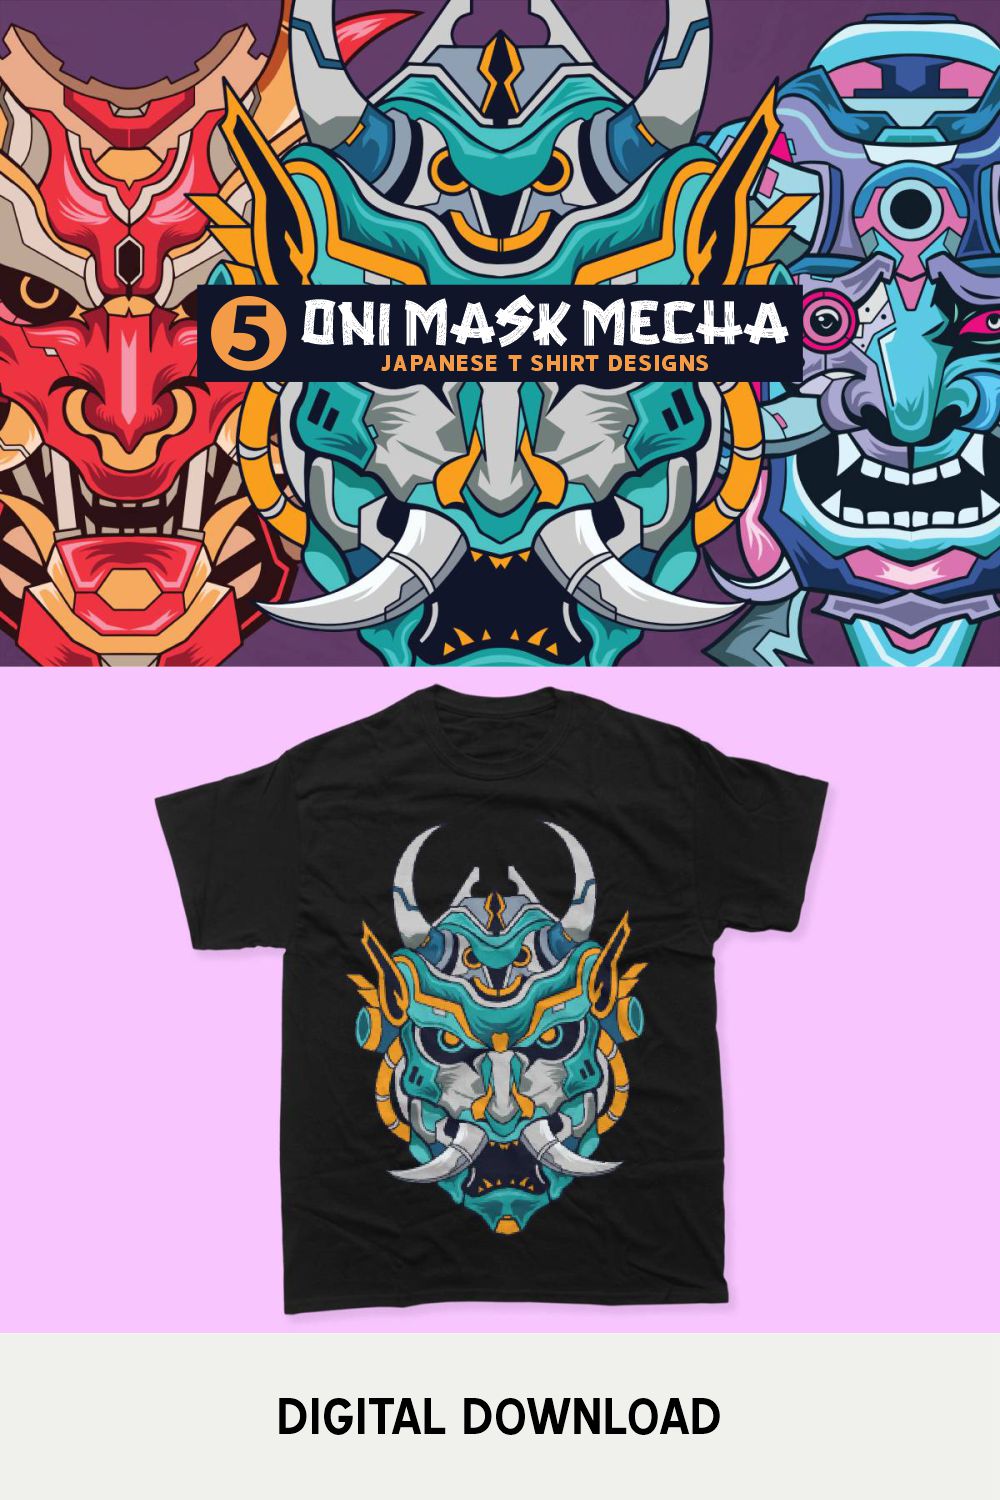 Oni Mask Mecha Japan Culture Vector T-shirt Designs Bundle, Hannya Mask Robot Artwork Illustration pinterest preview image.